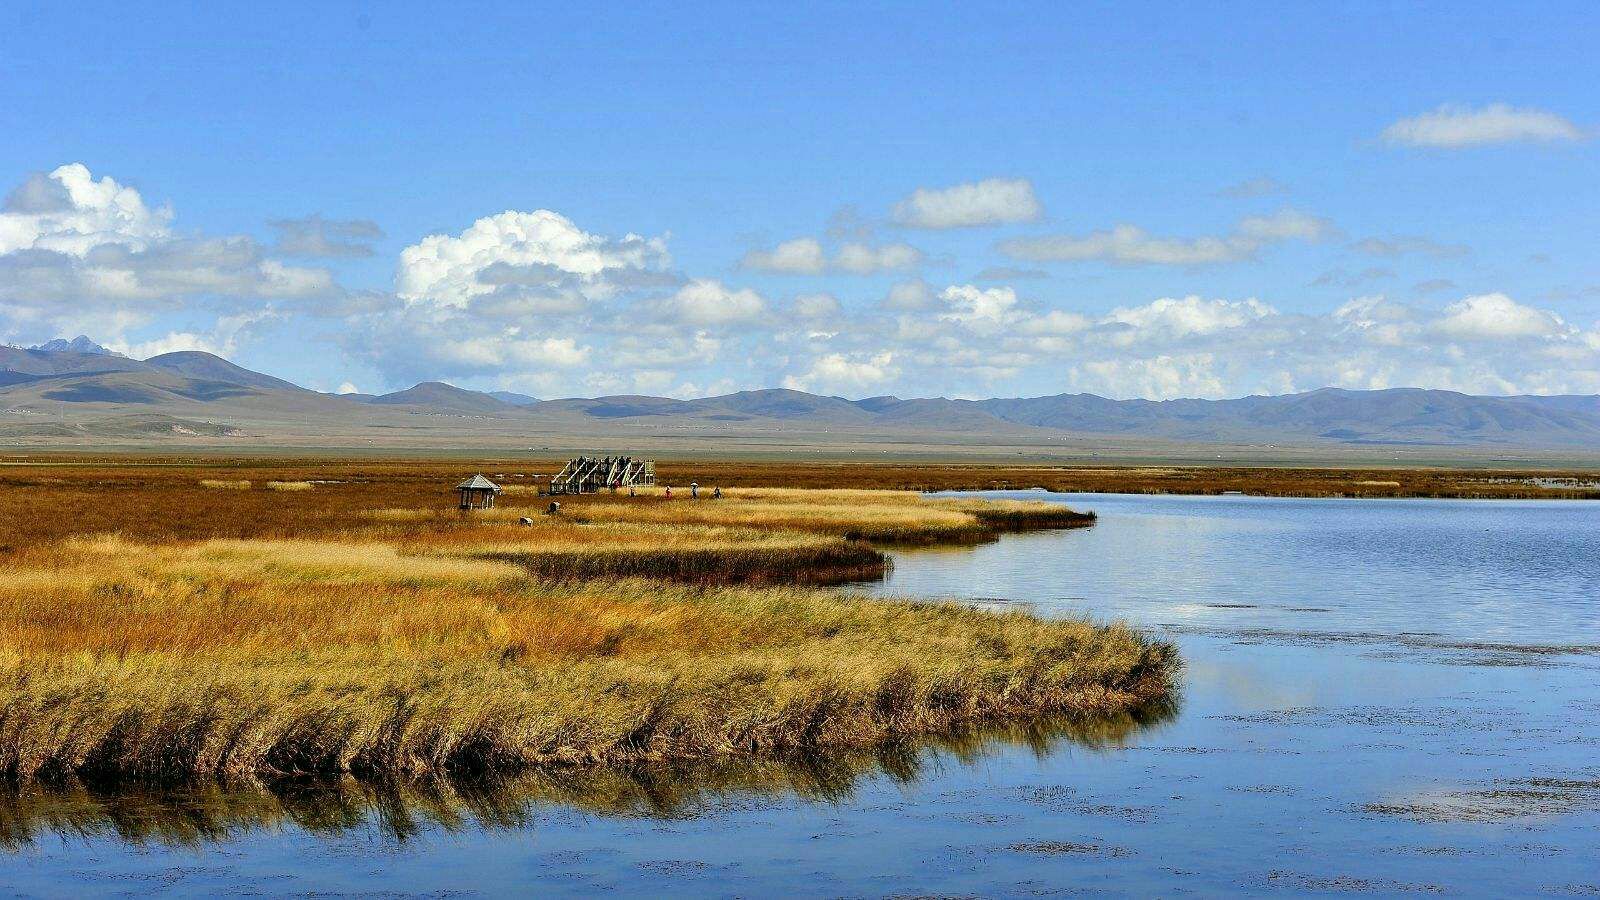 红原若尔盖草原什么时候去最美-若尔盖红原最佳旅游时间-西行川藏